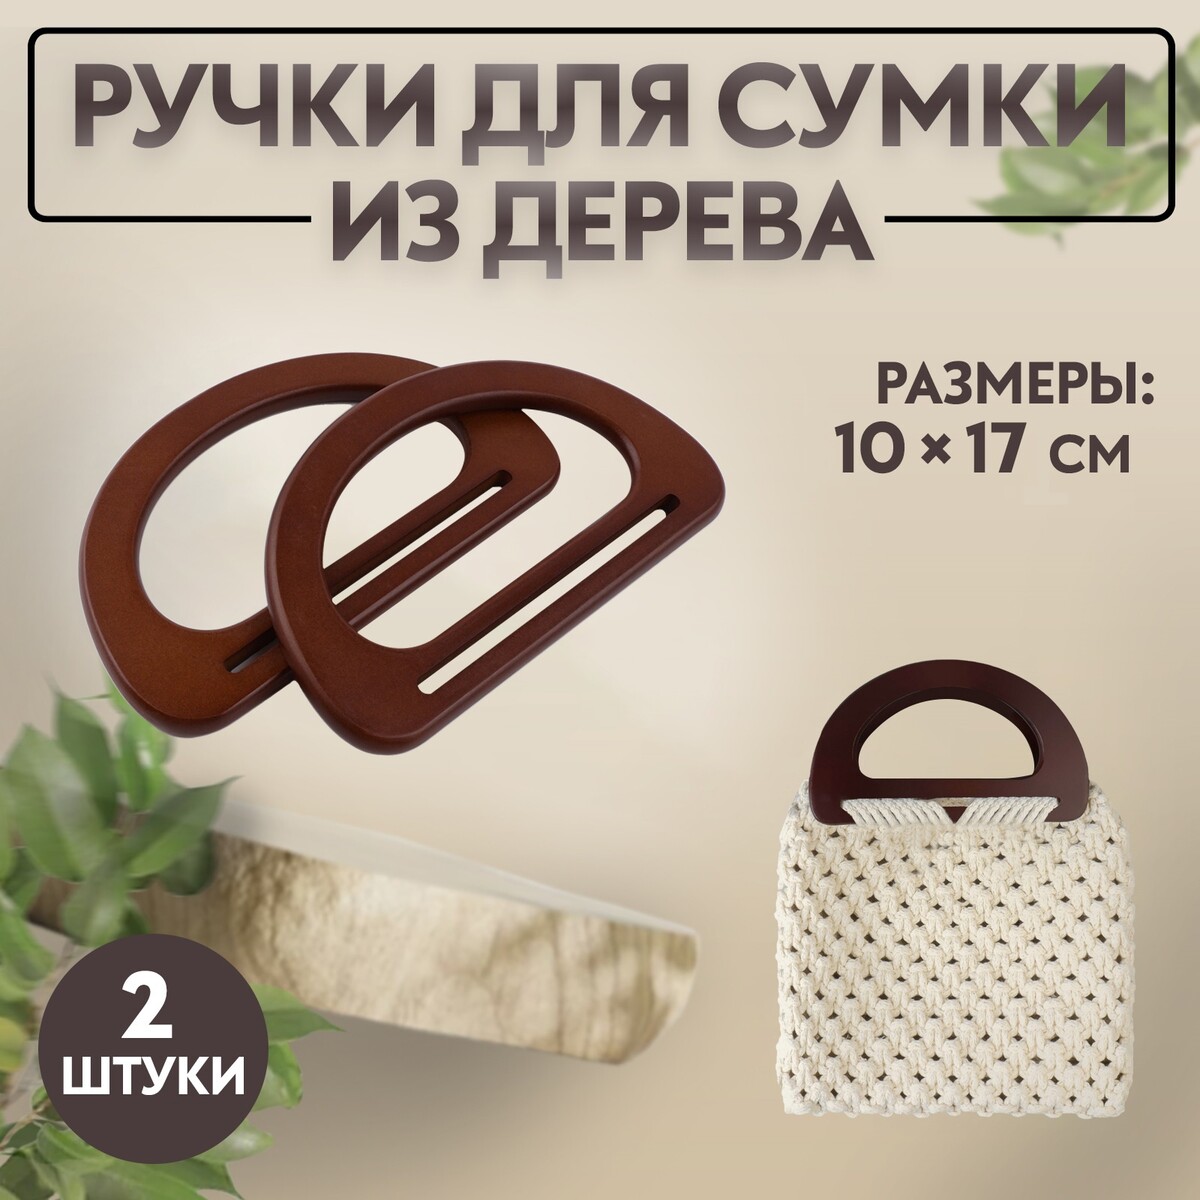 Ручки для сумки деревянные, 10 × 17 см, 2 шт, цвет темно-коричневый